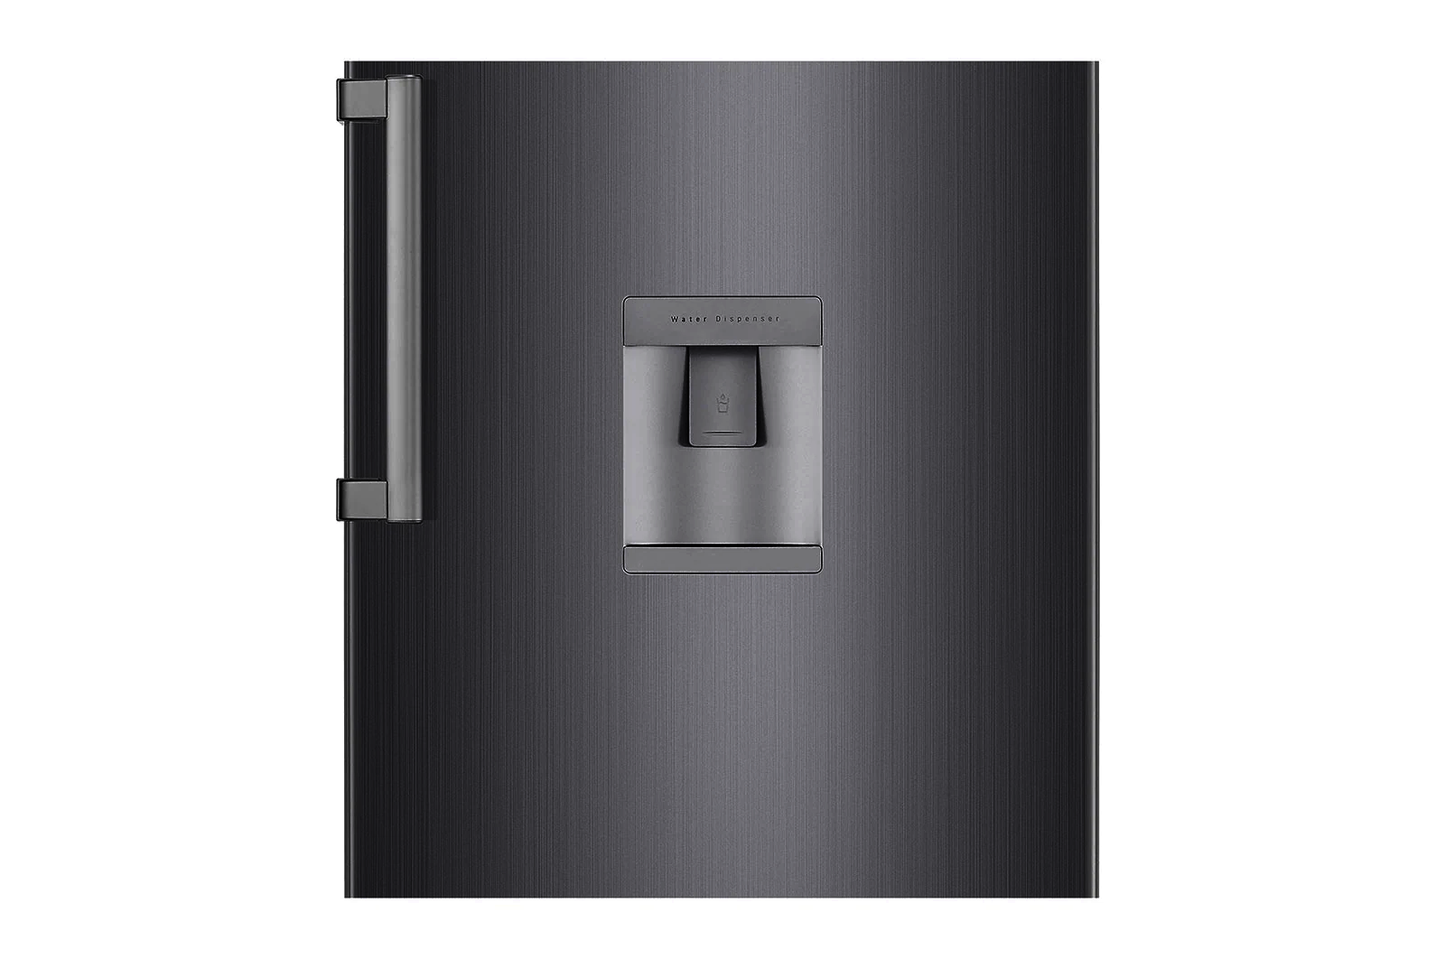 Lg REF 411 ELDM 411 Litres Single Door Refrigerator with water Dispenser